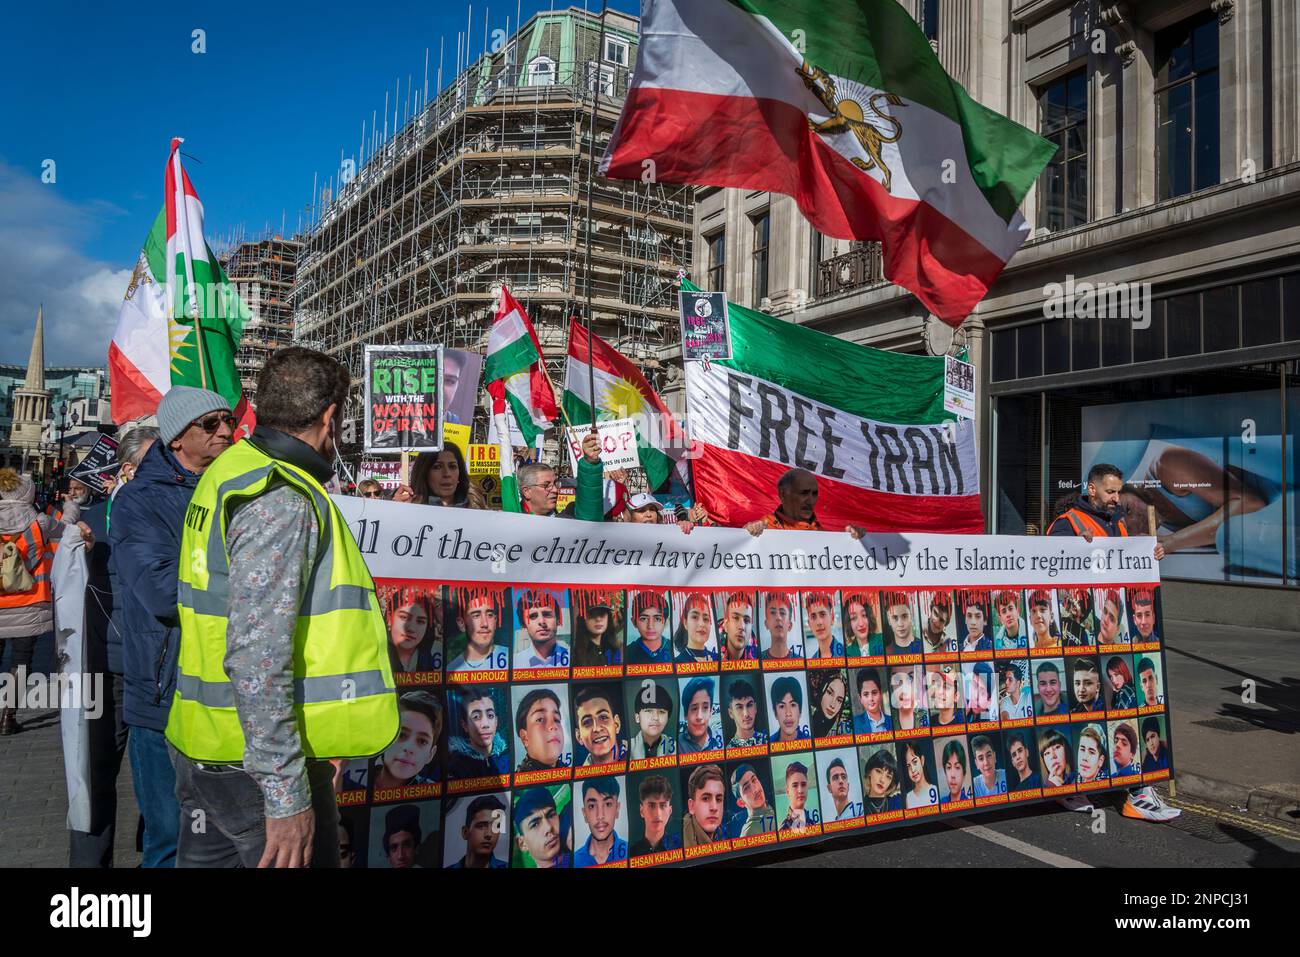 Bandiera con fotografie di giovani uccisi dal regime islamico, protesta pro-democrazia iraniana contro il governo islamico autocratico dell'Iran Foto stock - Alamy